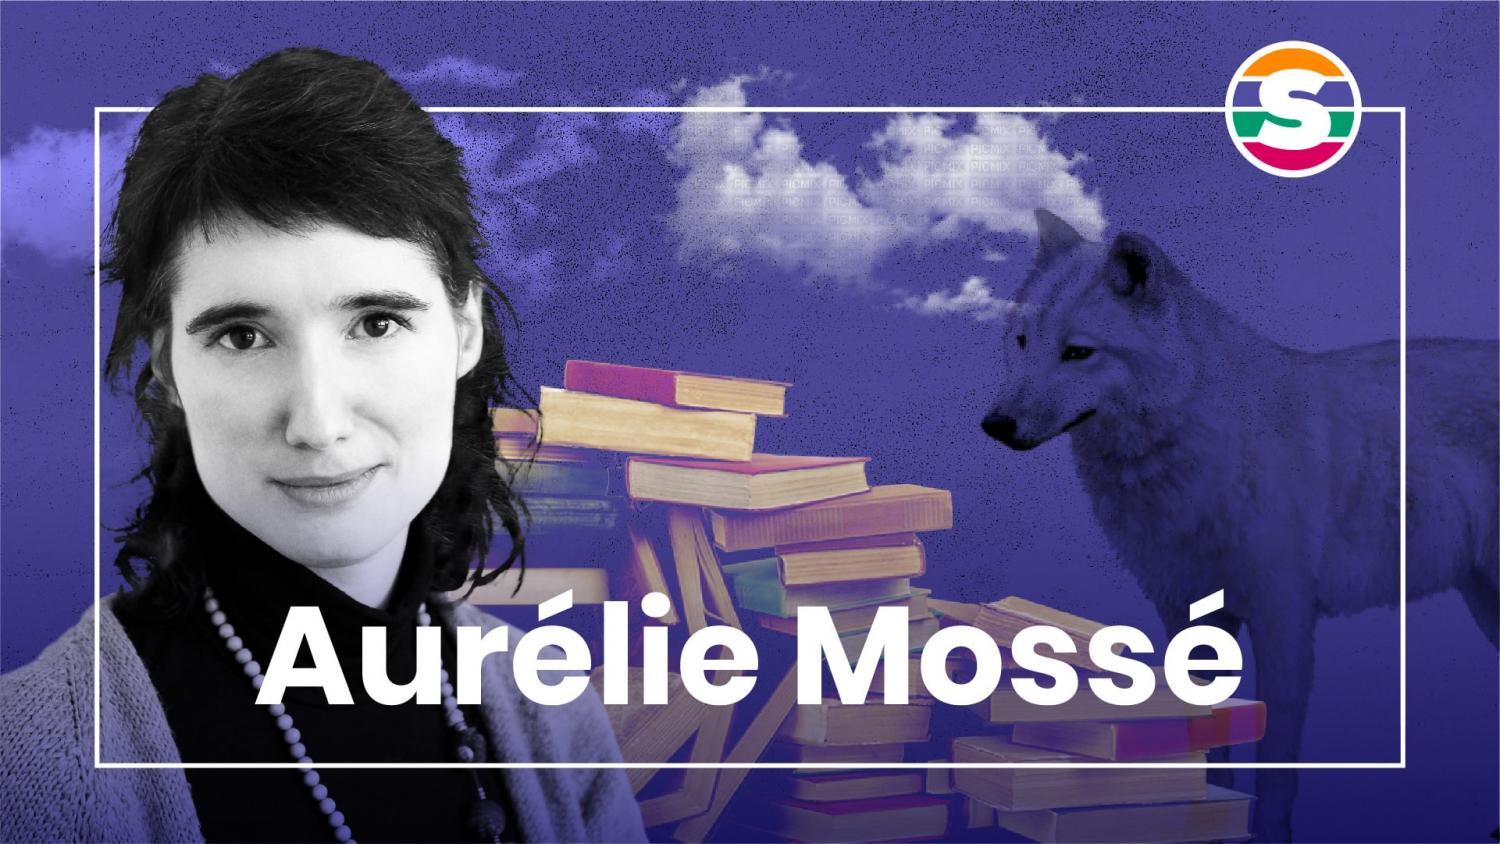 Aurélie Mossé for shemakes Voices 